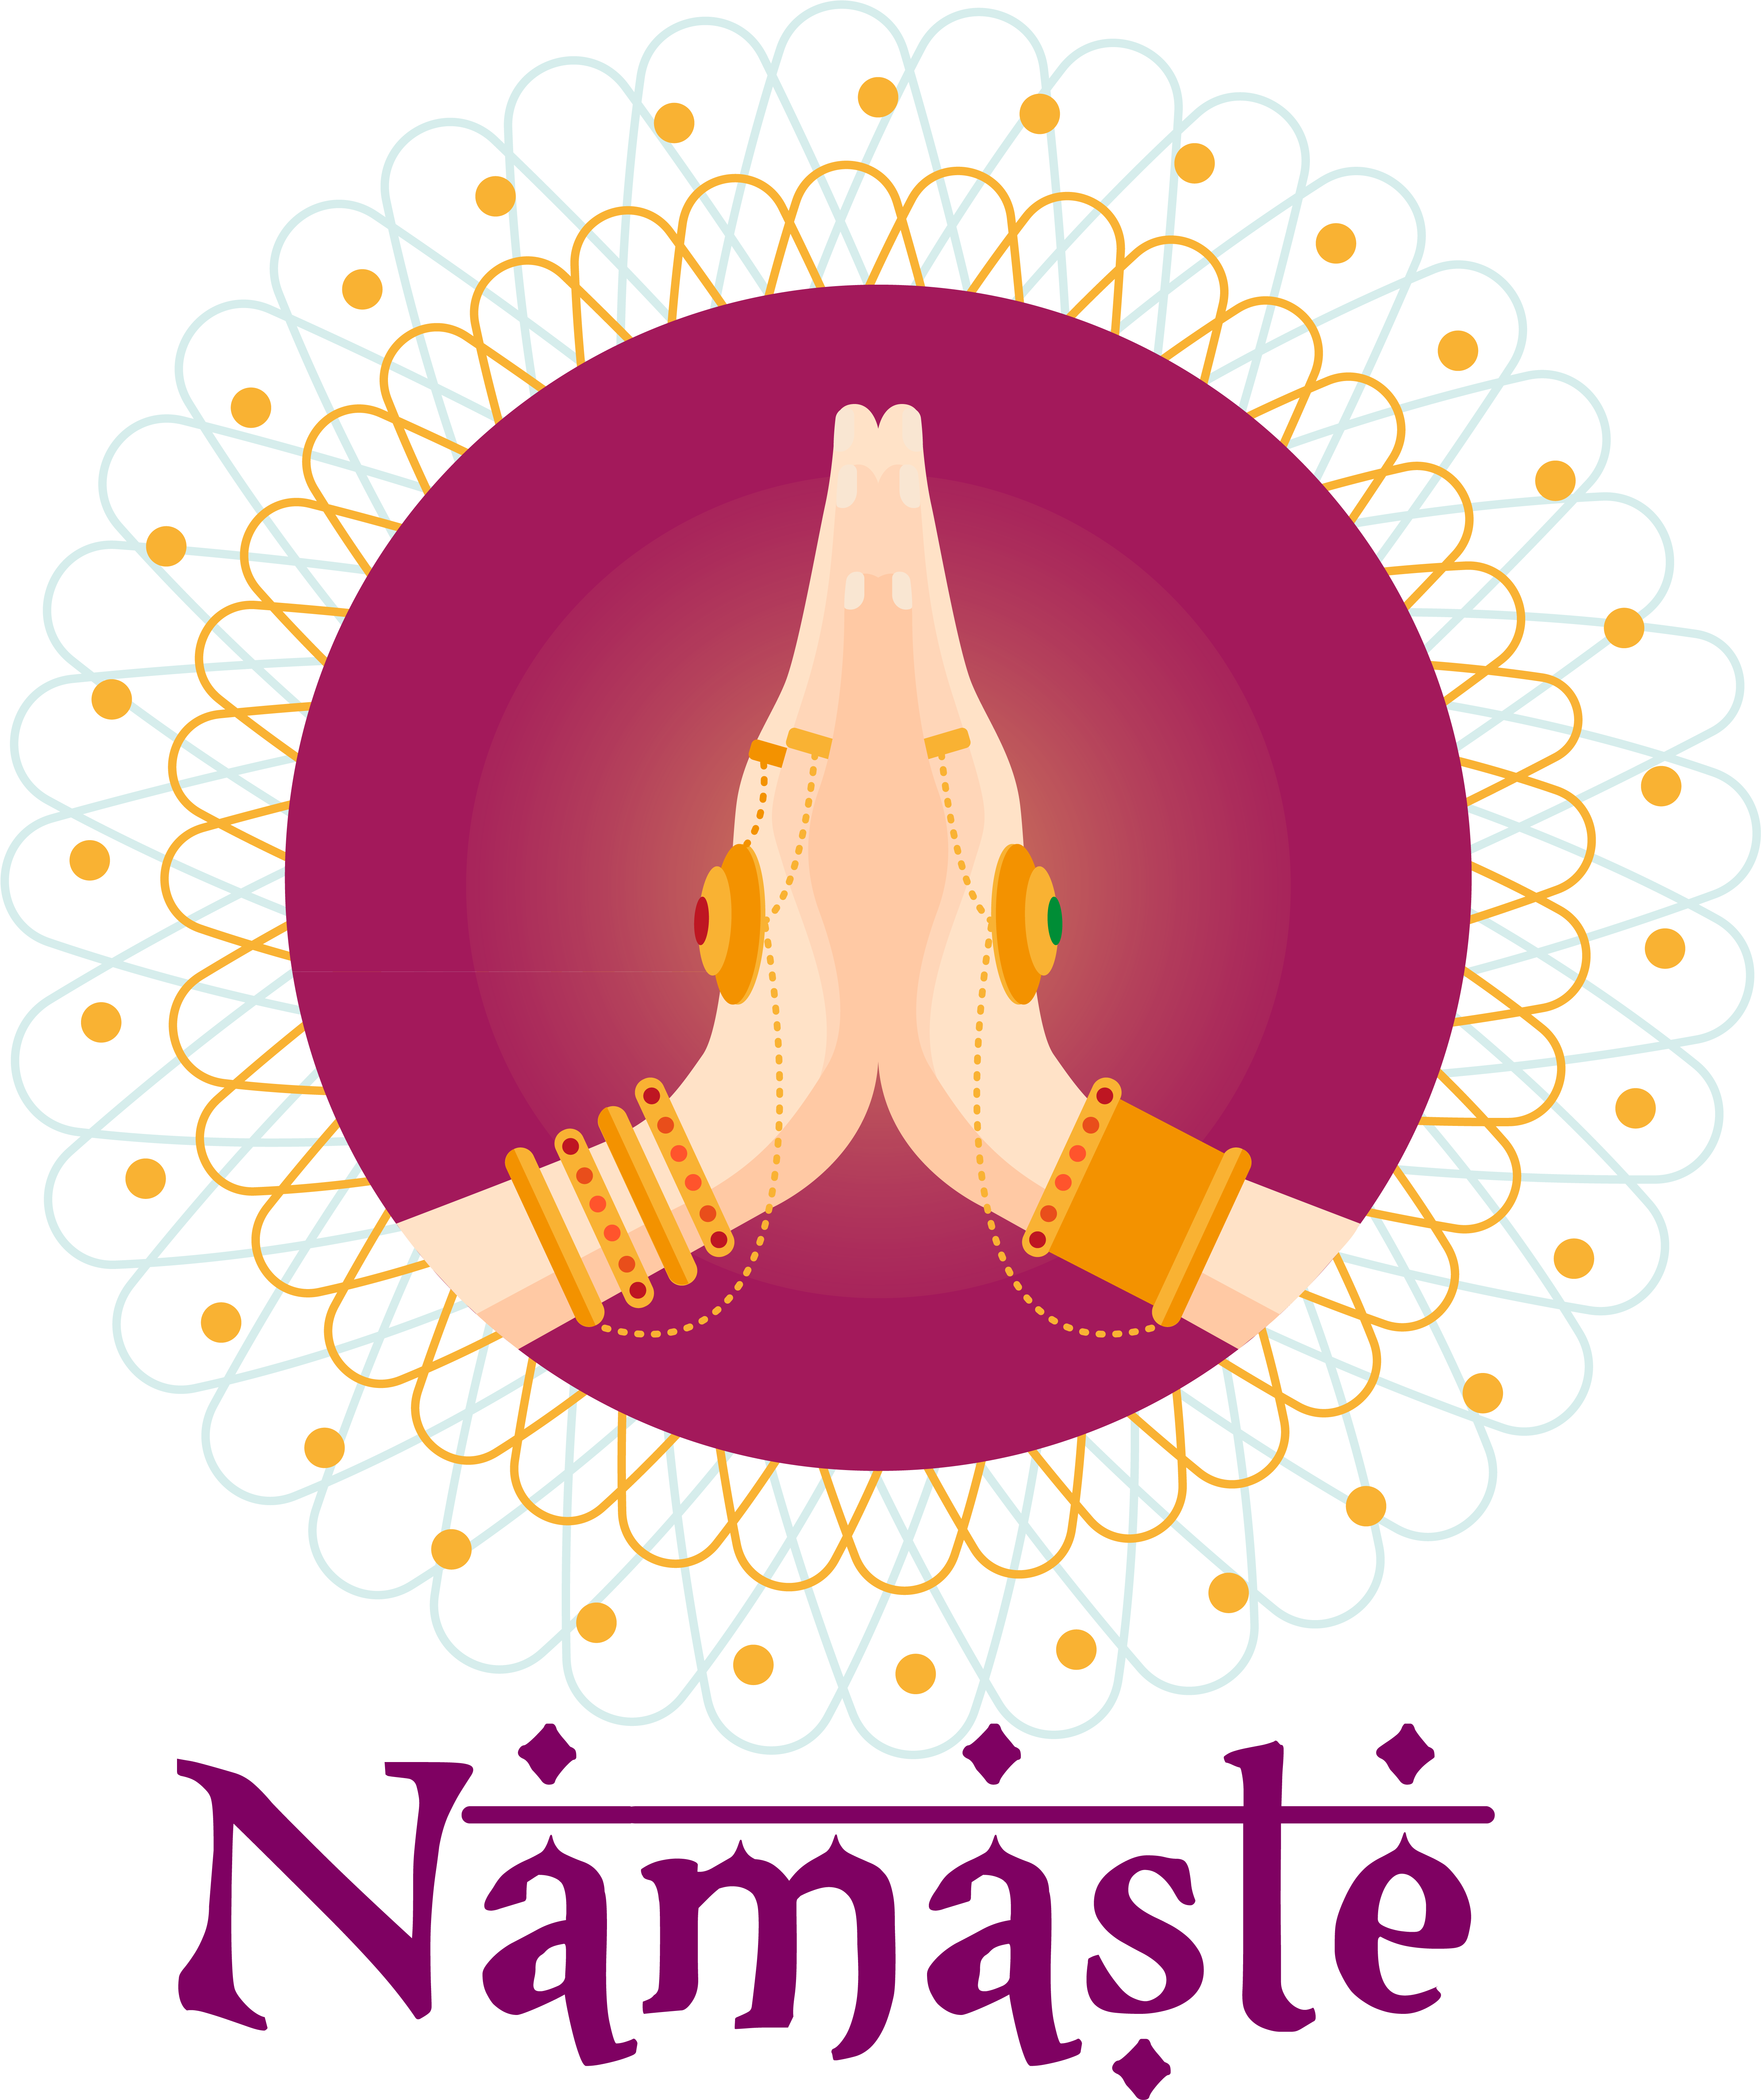 Namaste Greeting Graphic PNG image